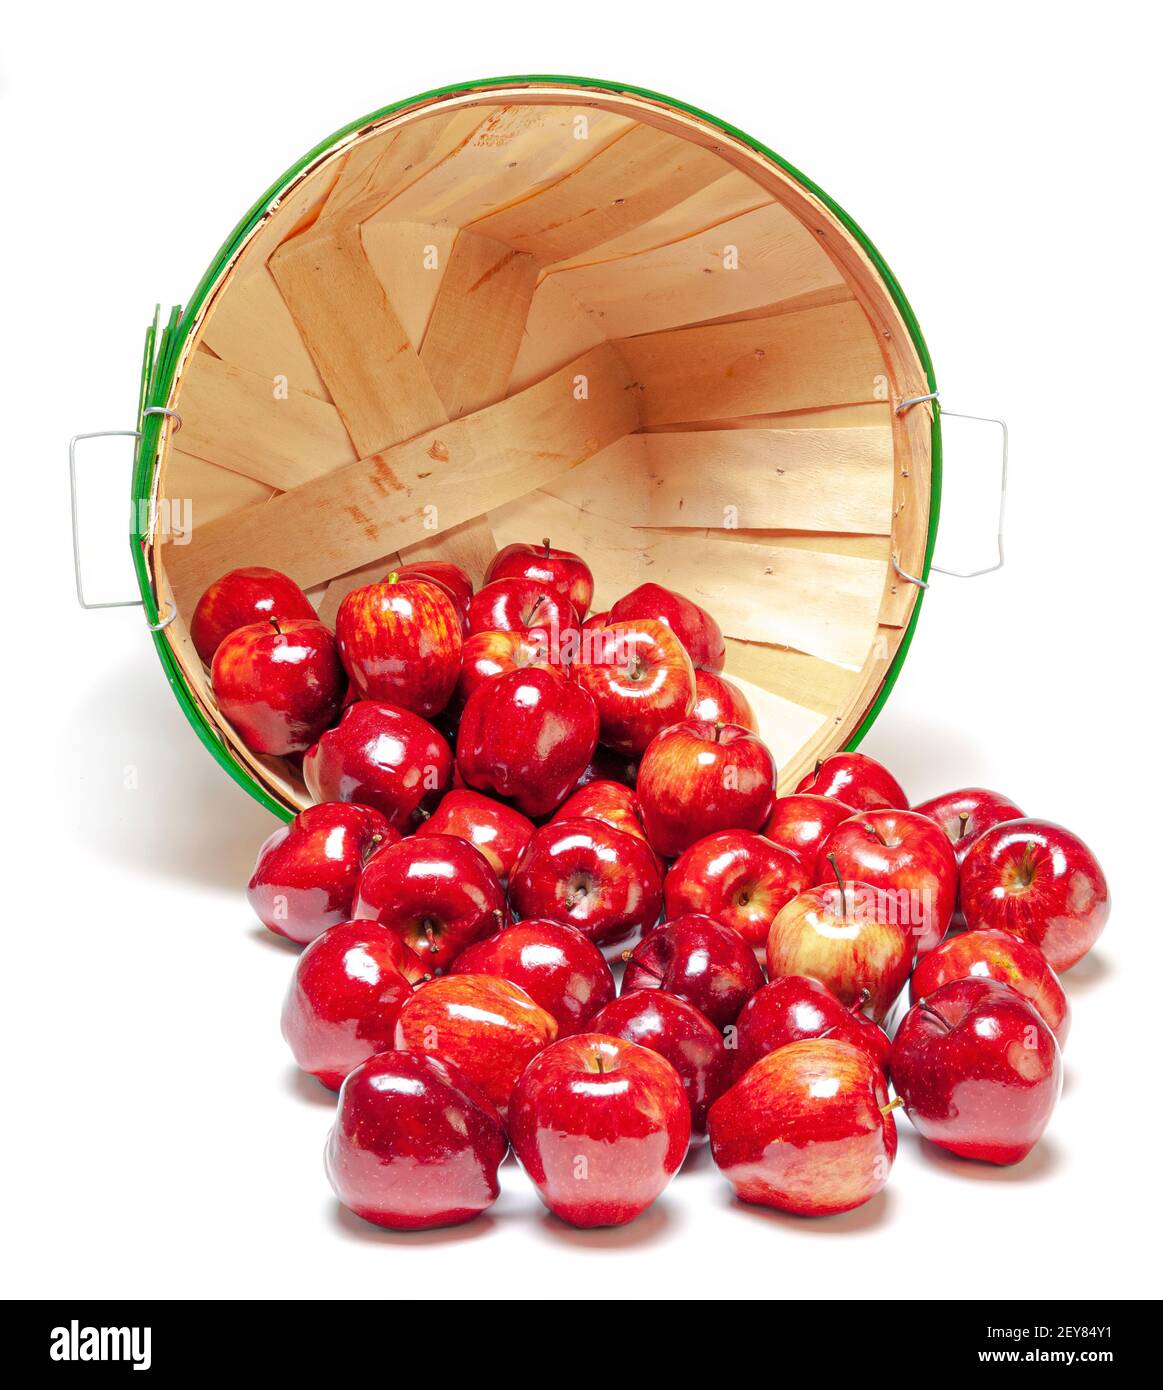 Colpo verticale di un cestino sul suo lato con le mele lucenti rosse che si sparano fuori. Isolato su bianco con ombre. Foto Stock